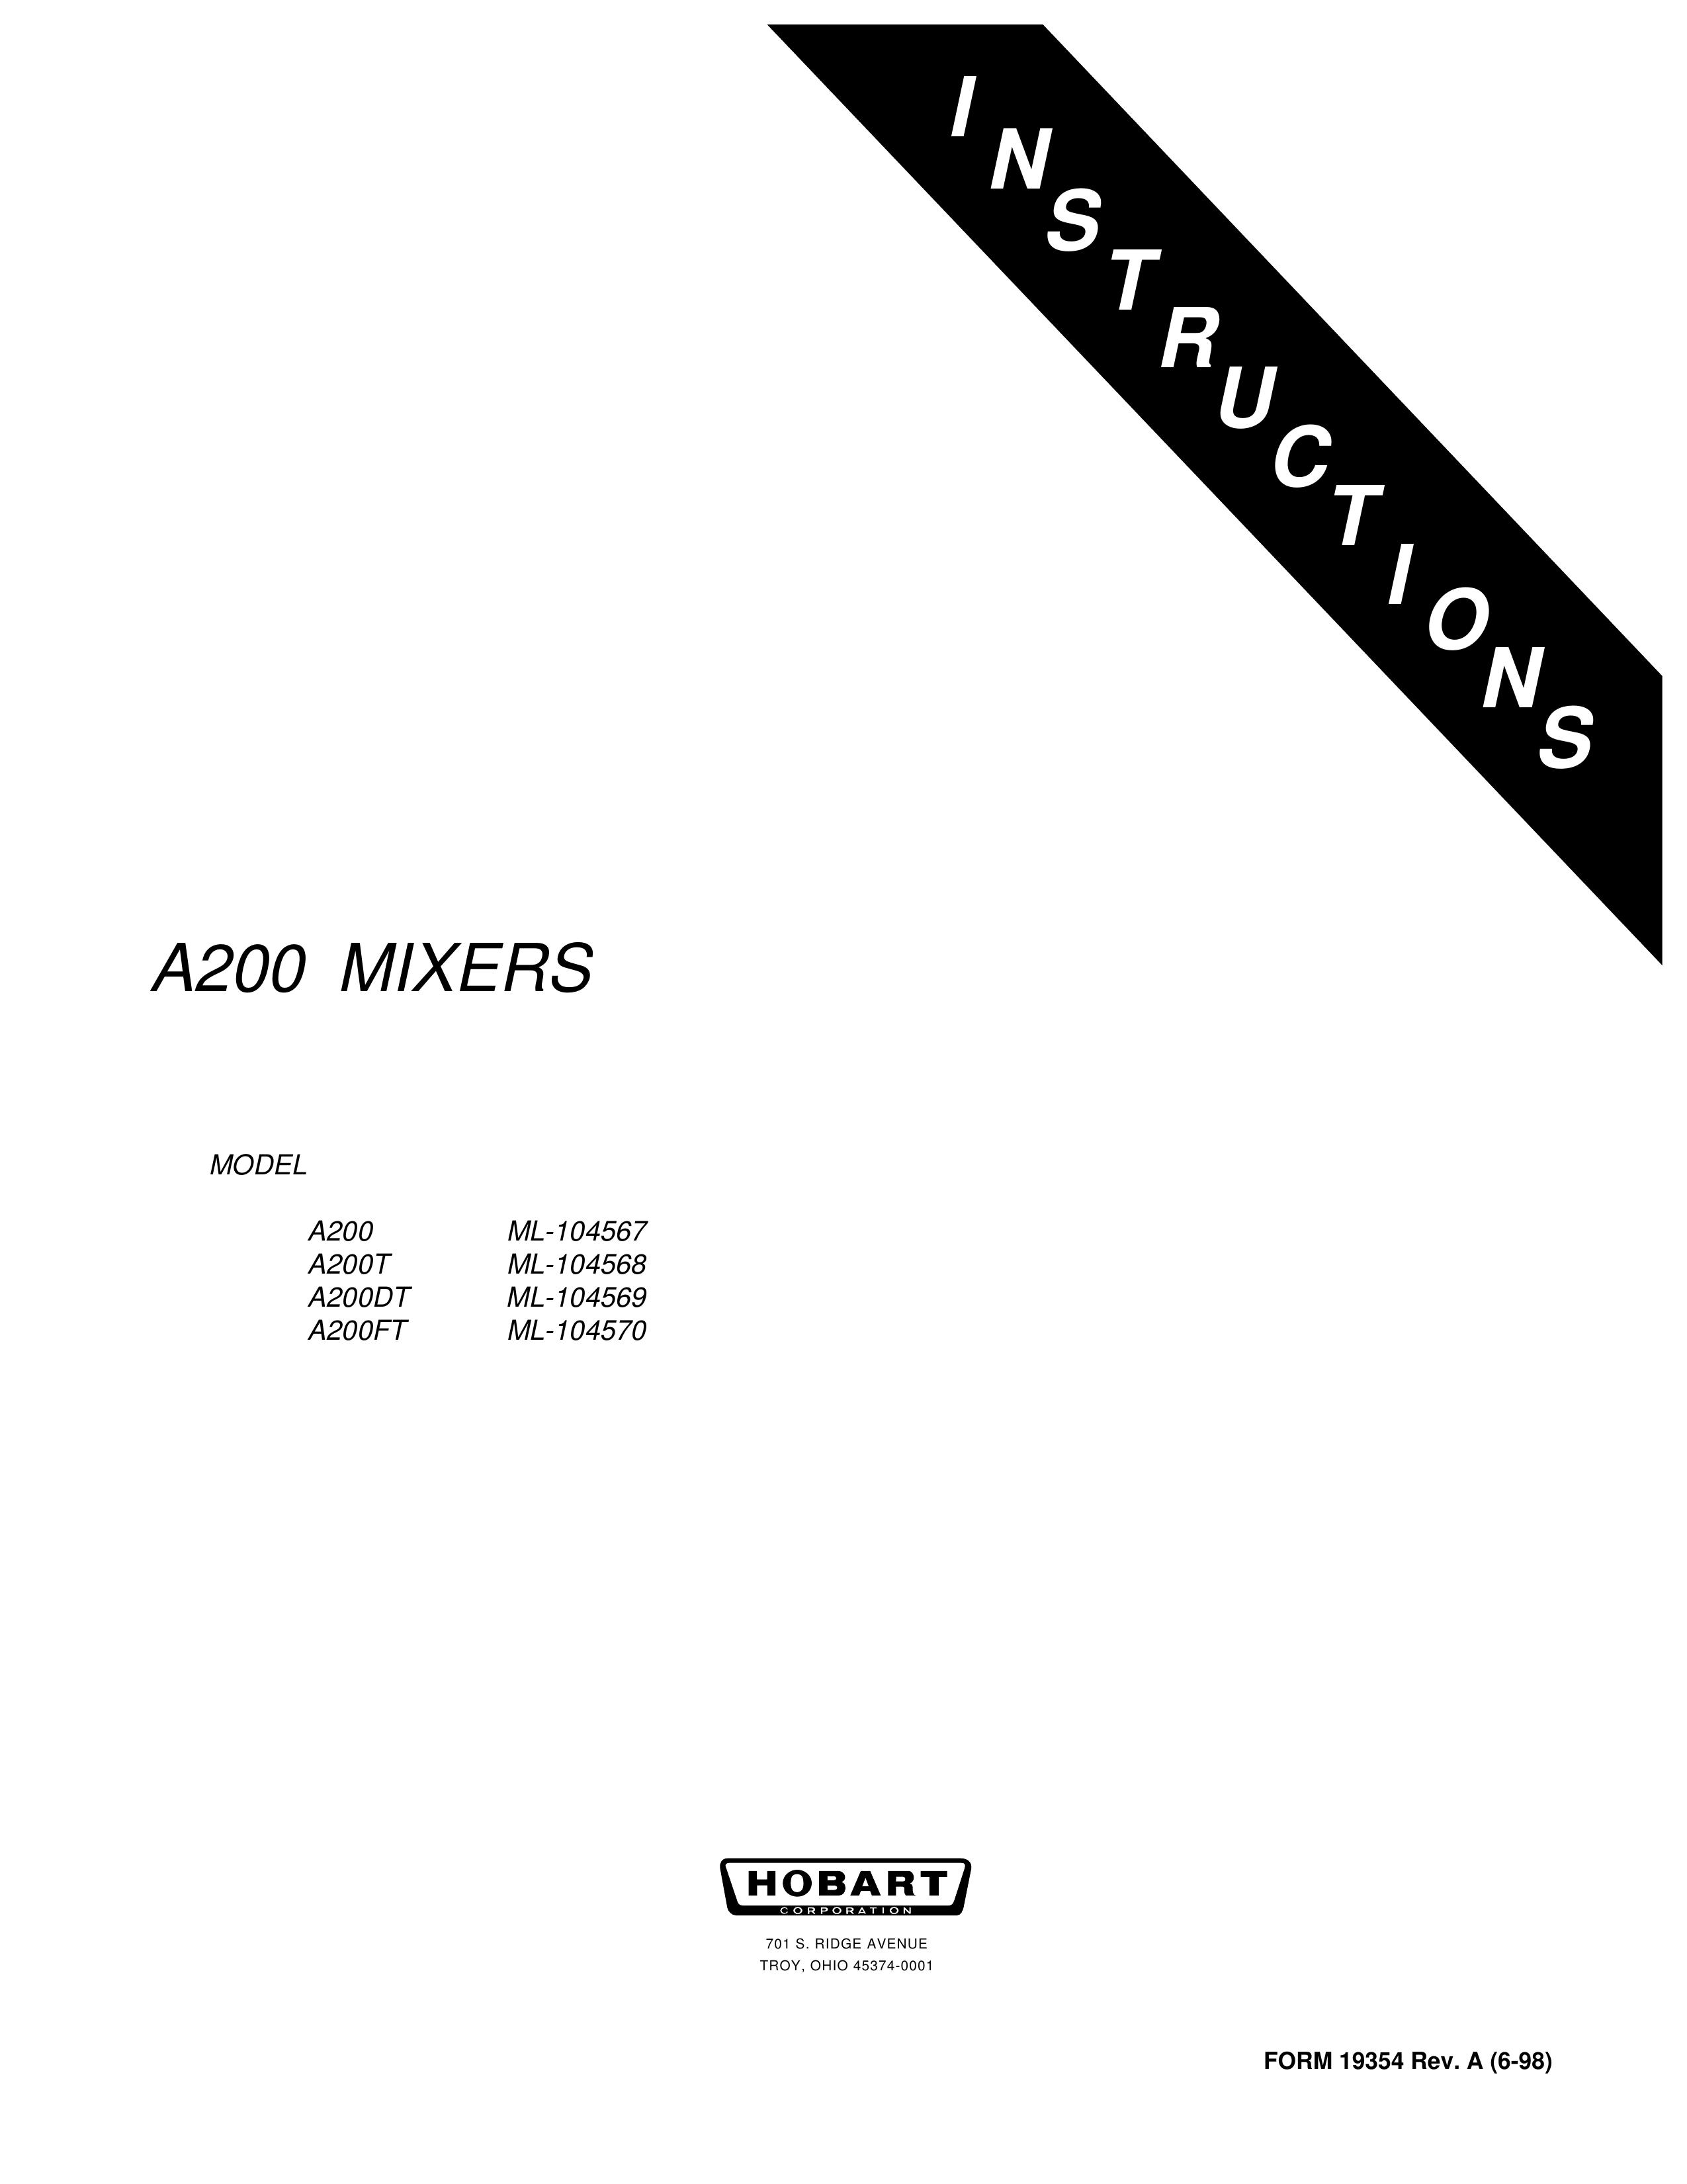 Hobart A200T ML-104568 Music Mixer User Manual